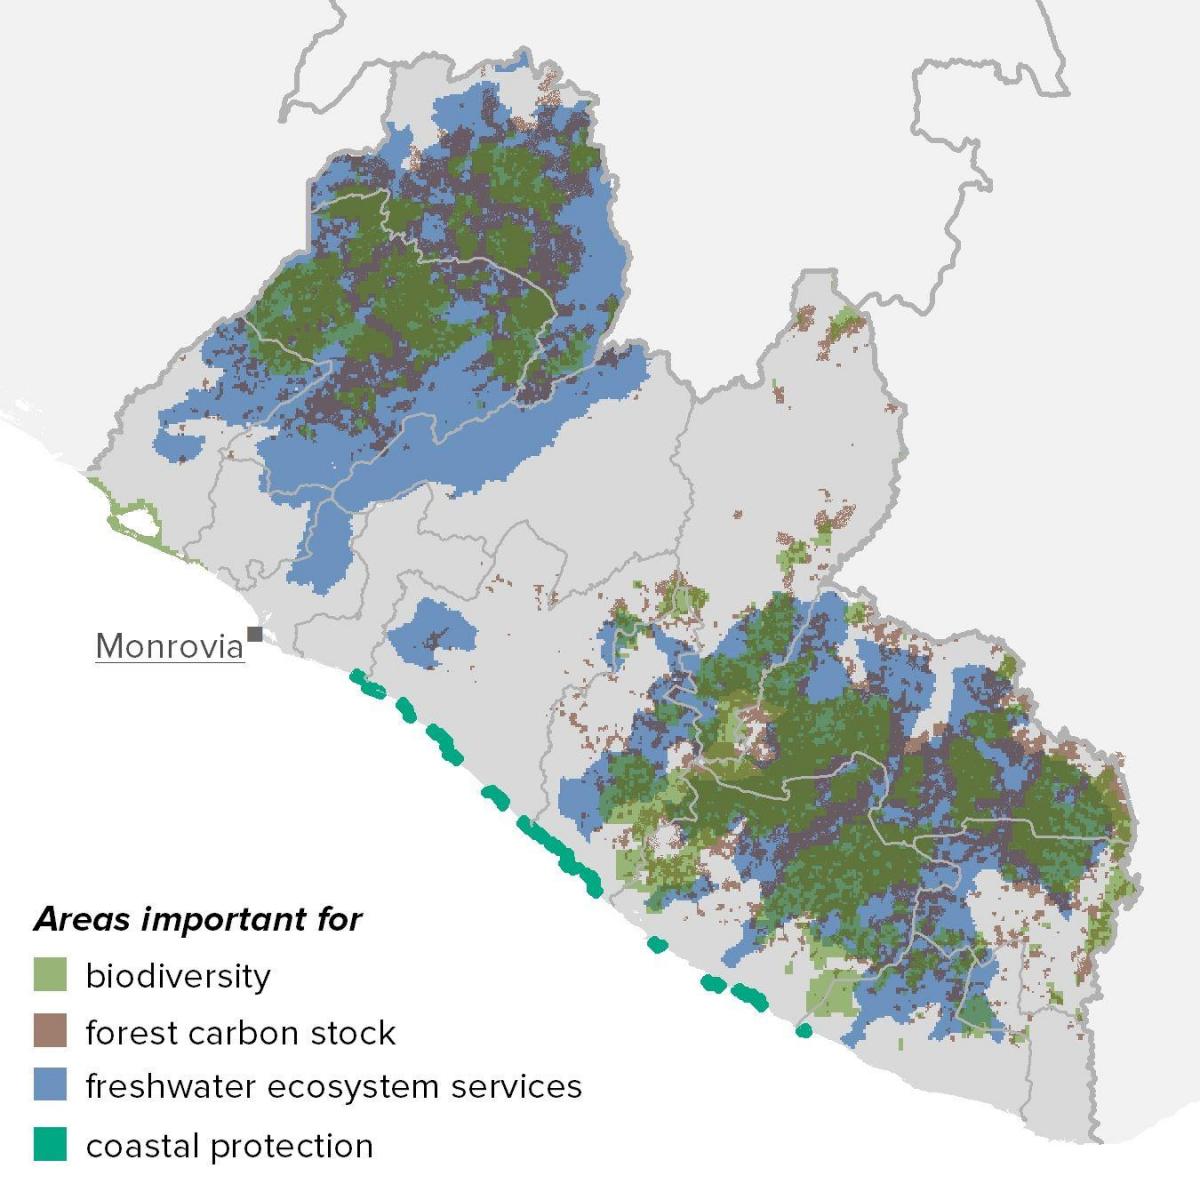 નકશો લાઇબેરિયા કુદરતી સંસાધનો